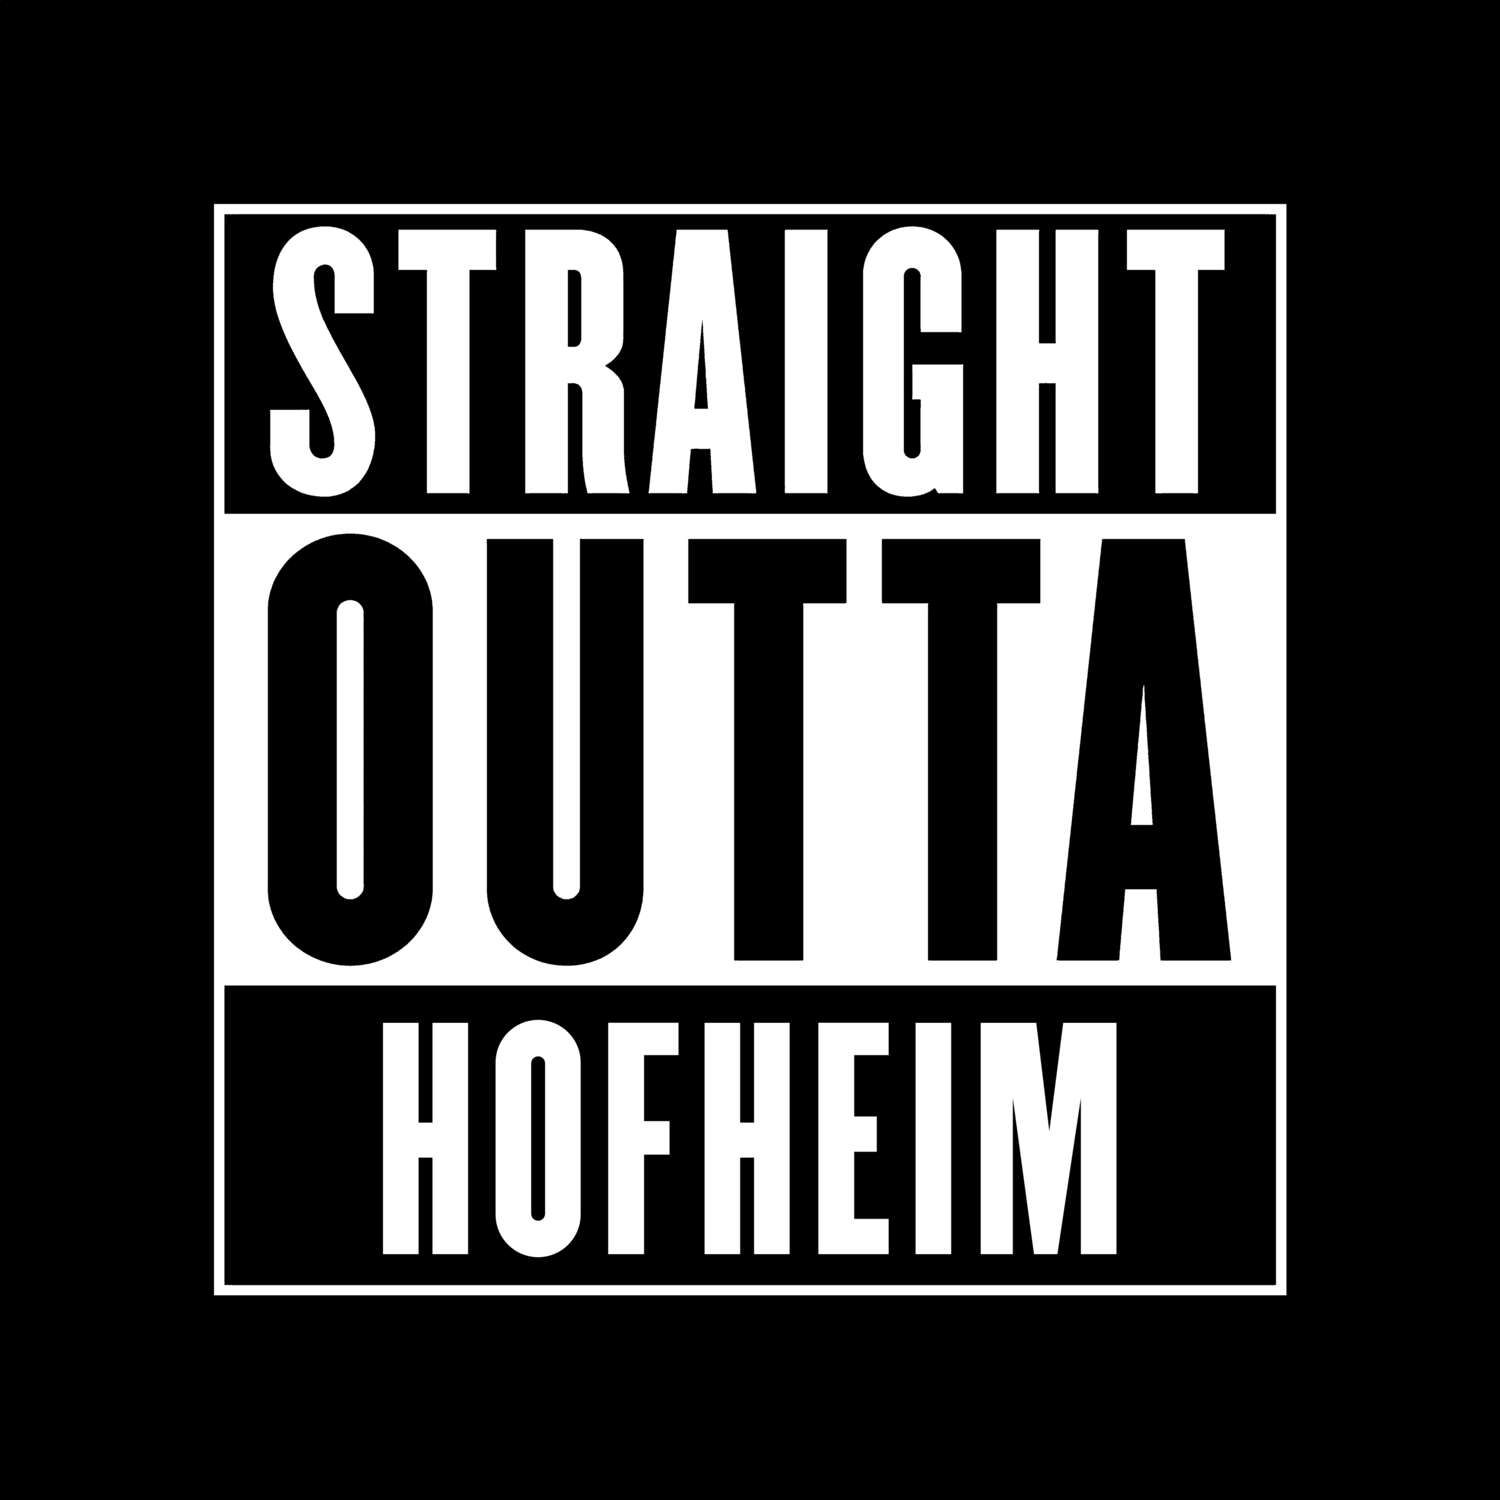 Hofheim T-Shirt »Straight Outta«